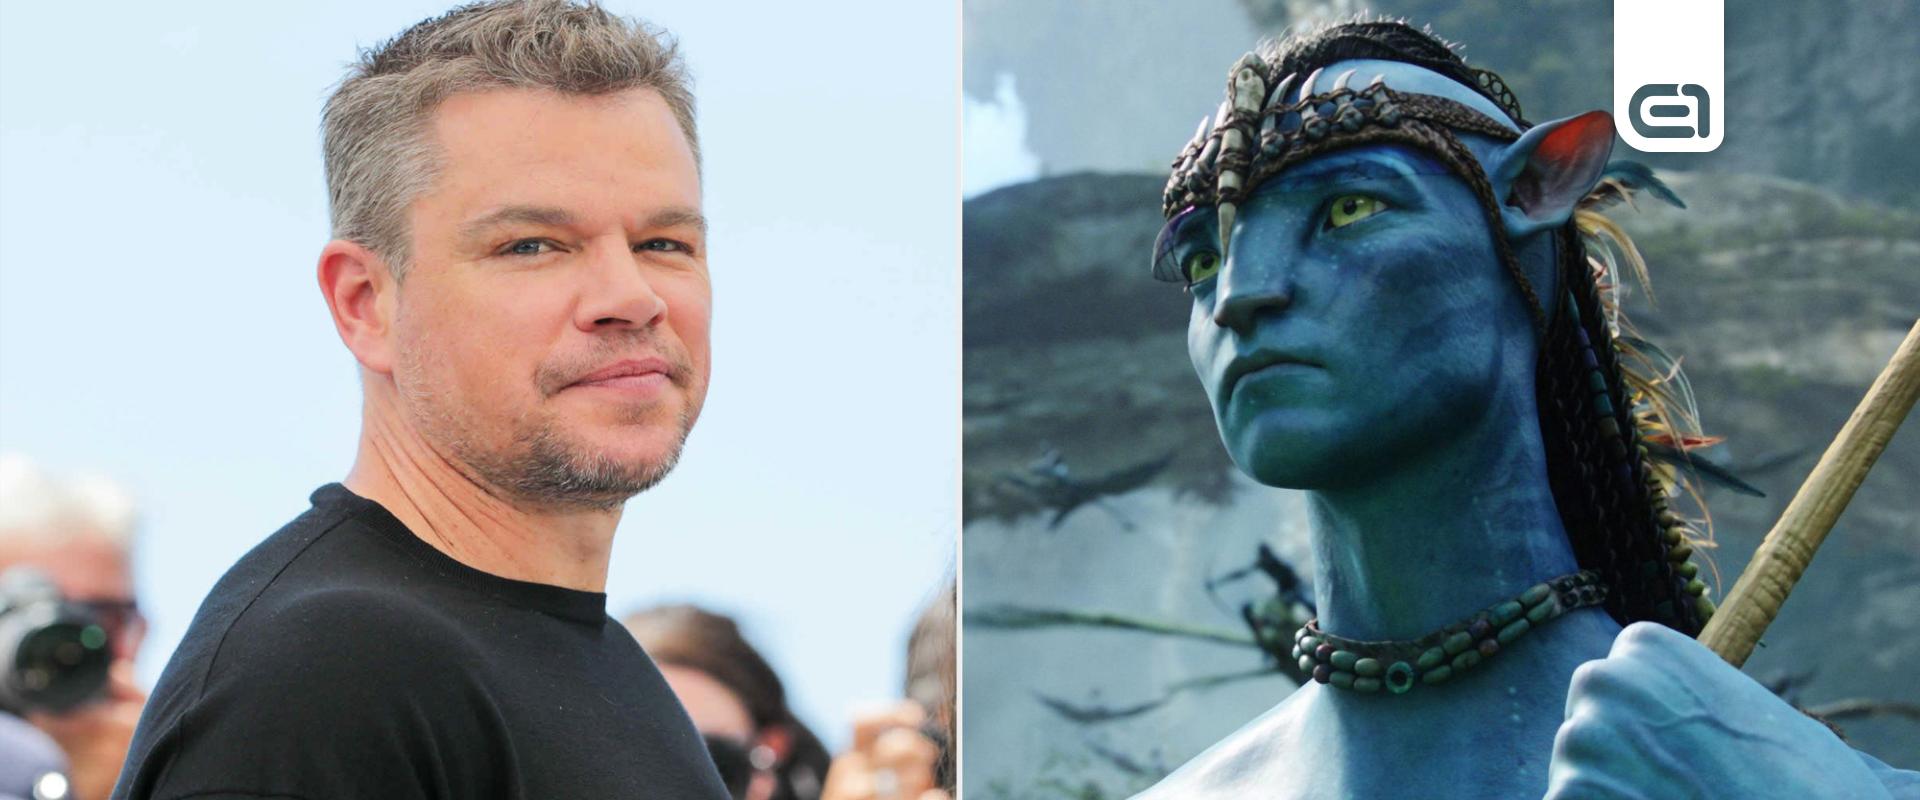 Matt Damon elmondta miért utasította vissza az Avatart és az irdatlan gázsit